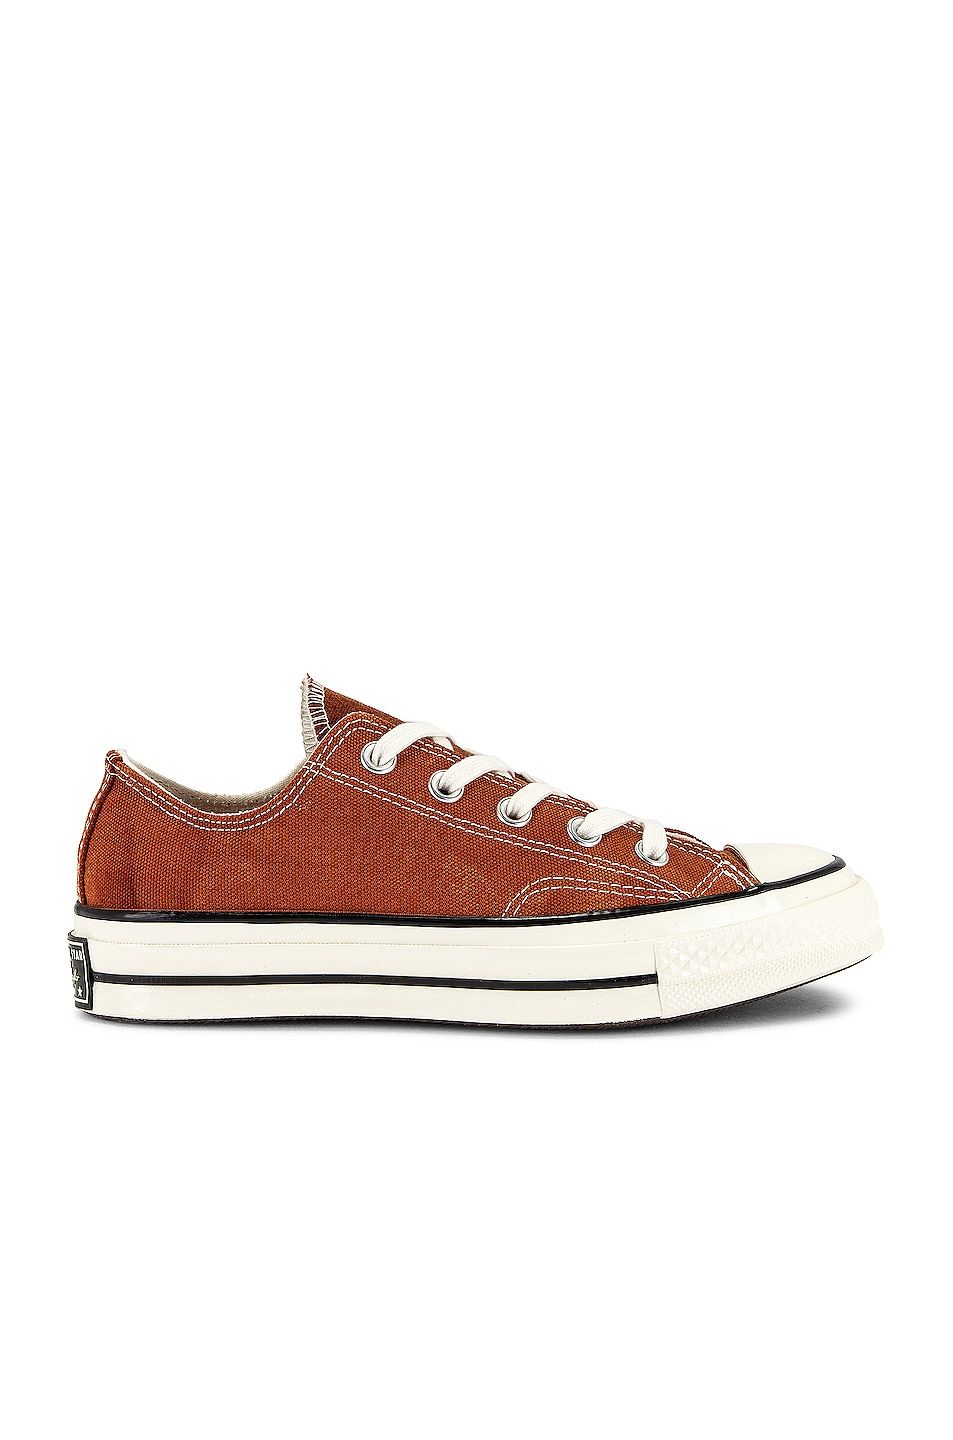 顯白磚紅色單品推薦#14：Converse Chuck 70帆布鞋